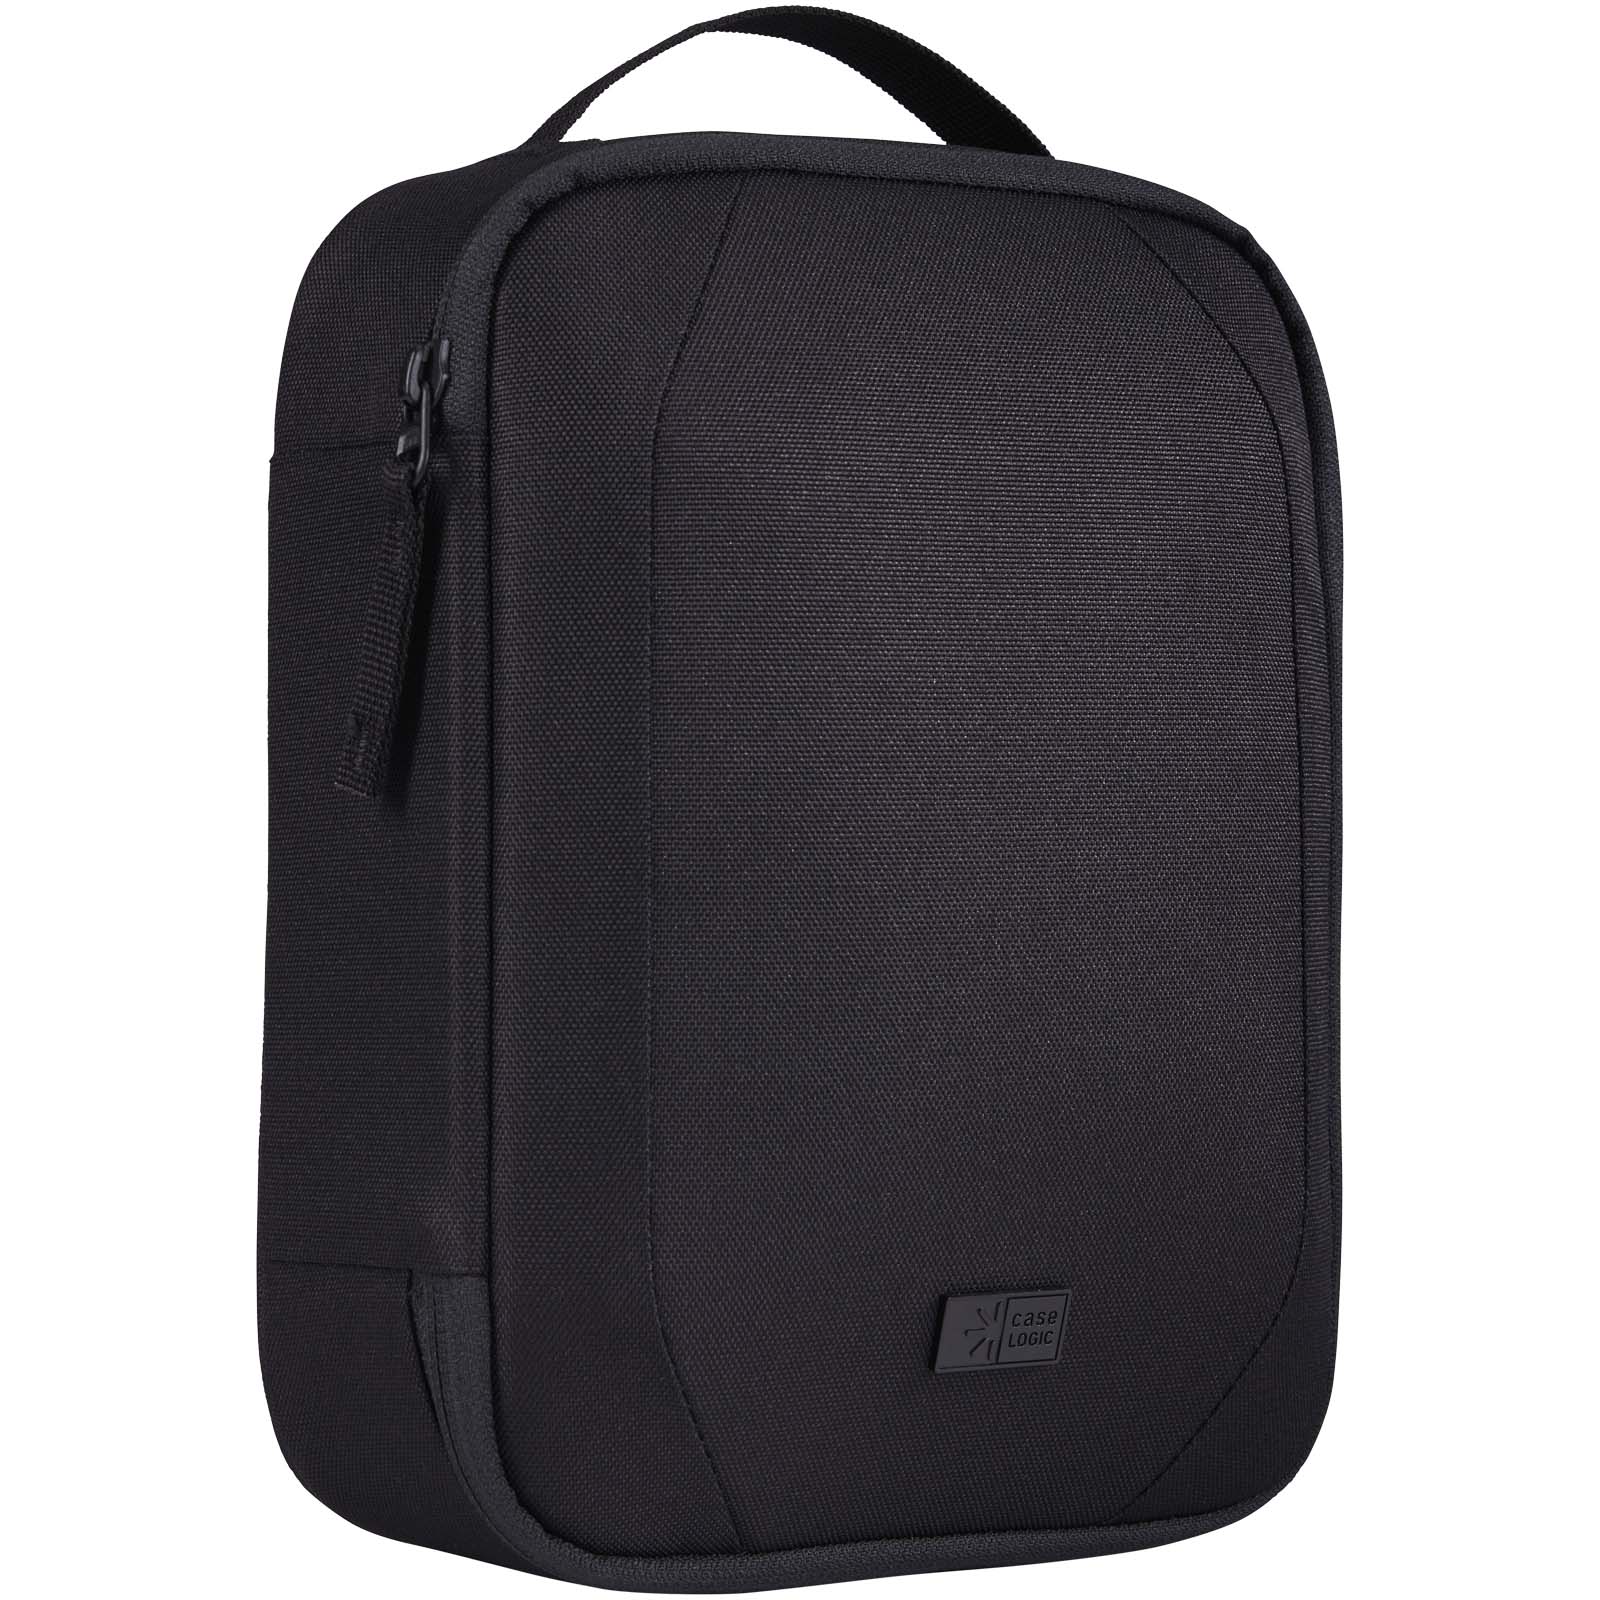 Advertising Travel Accessories - Case Logic Invigo accessories bag - 0